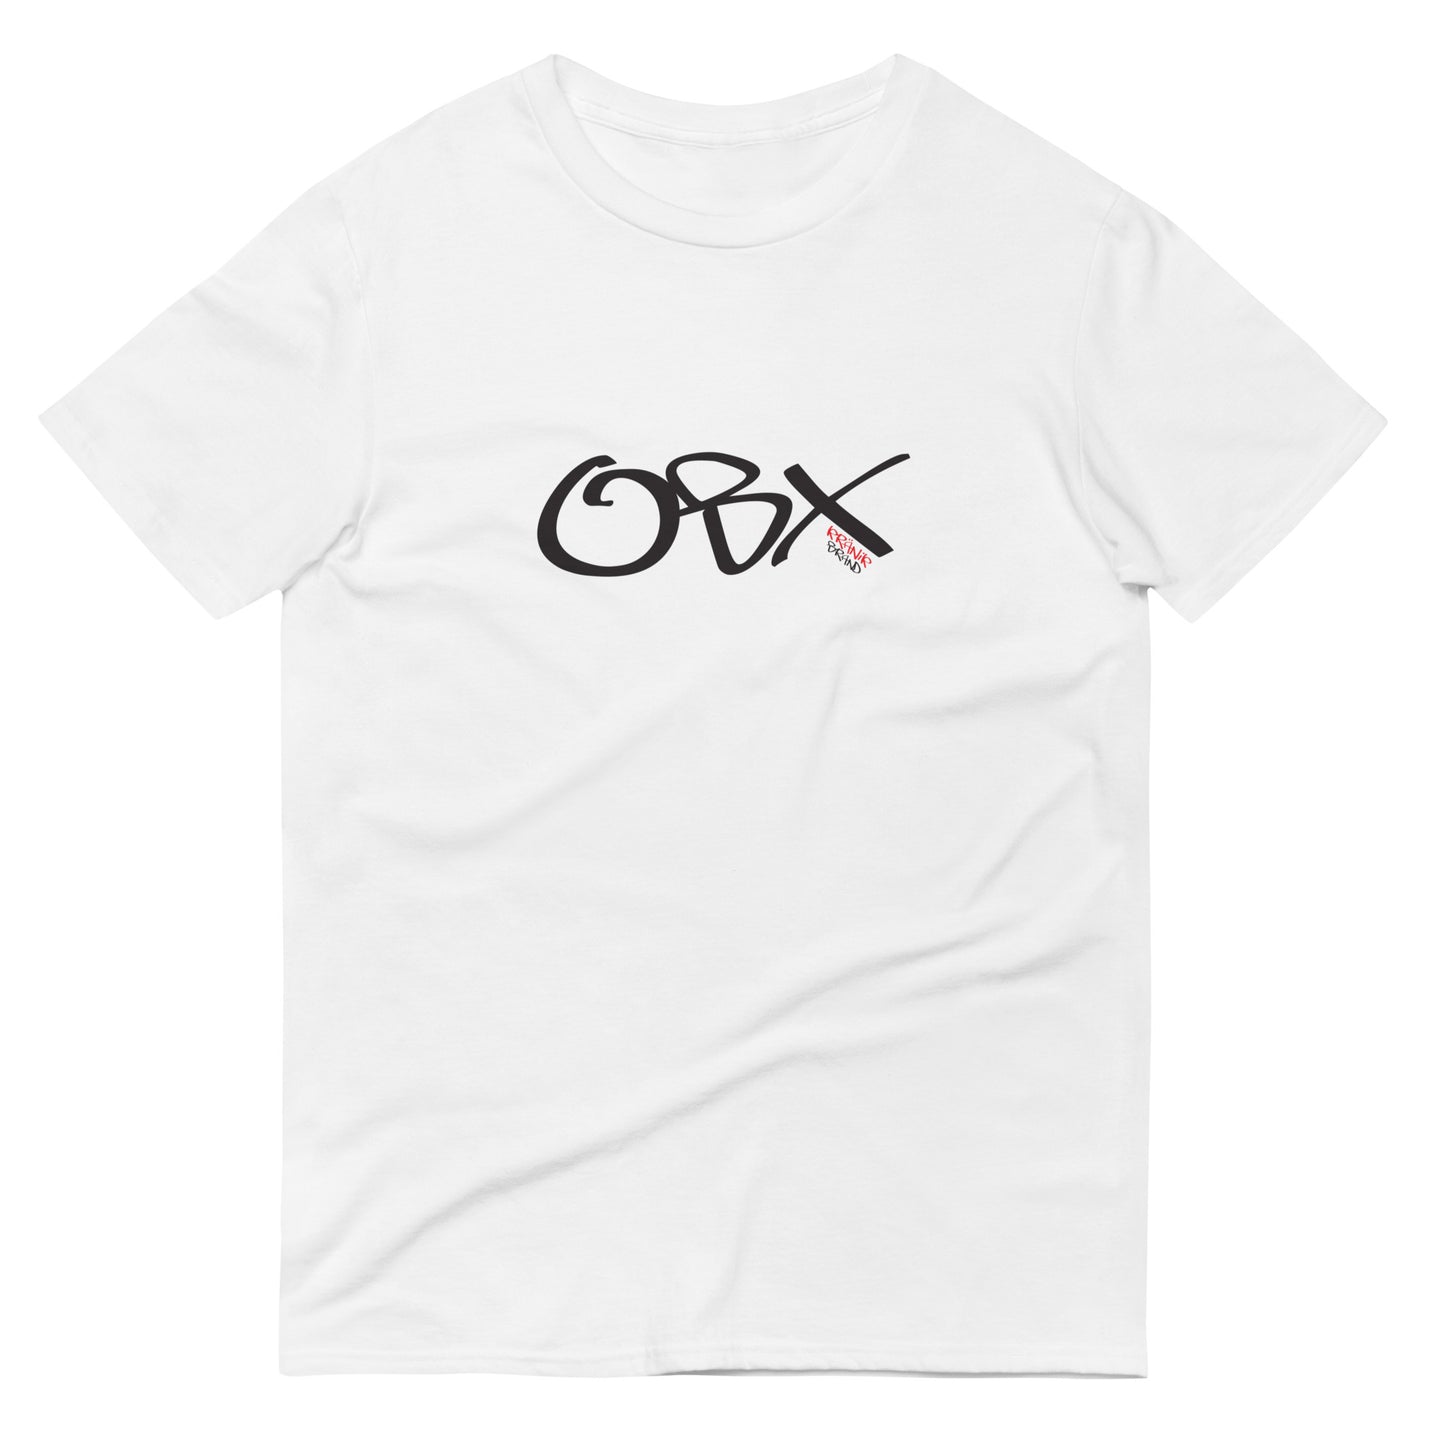 Kranik Brand / T-shirt / OBX